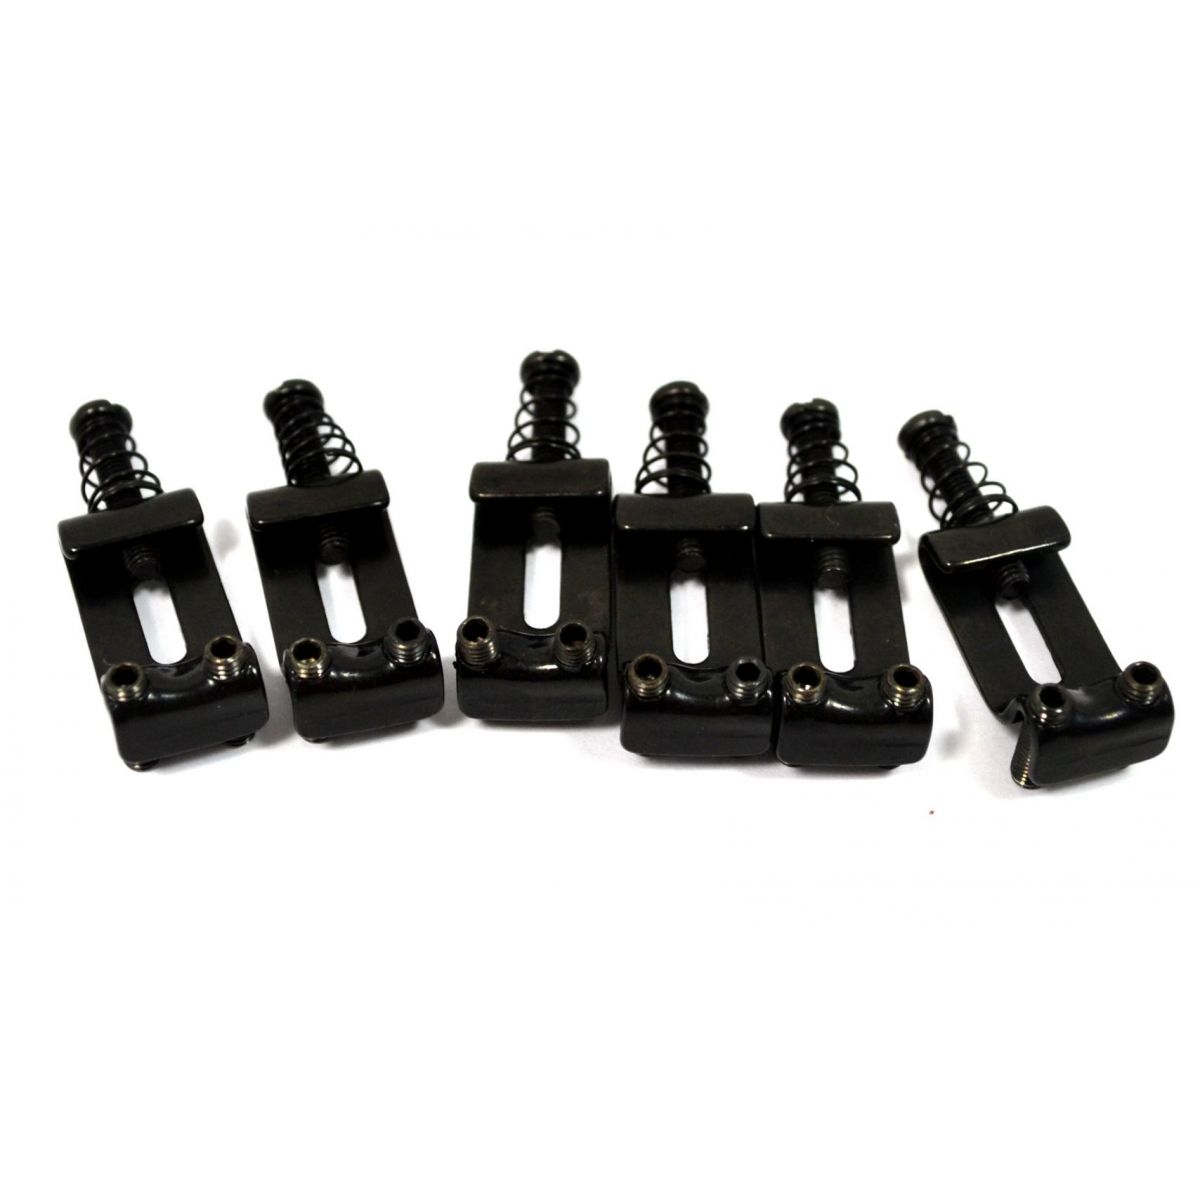 Carrinhos (saddles) pretos modelo vintage para guitarra - Espaçamento 10.8mm - Kit com 6 peças - Sung-il (PS007) - Luthieria Brasil